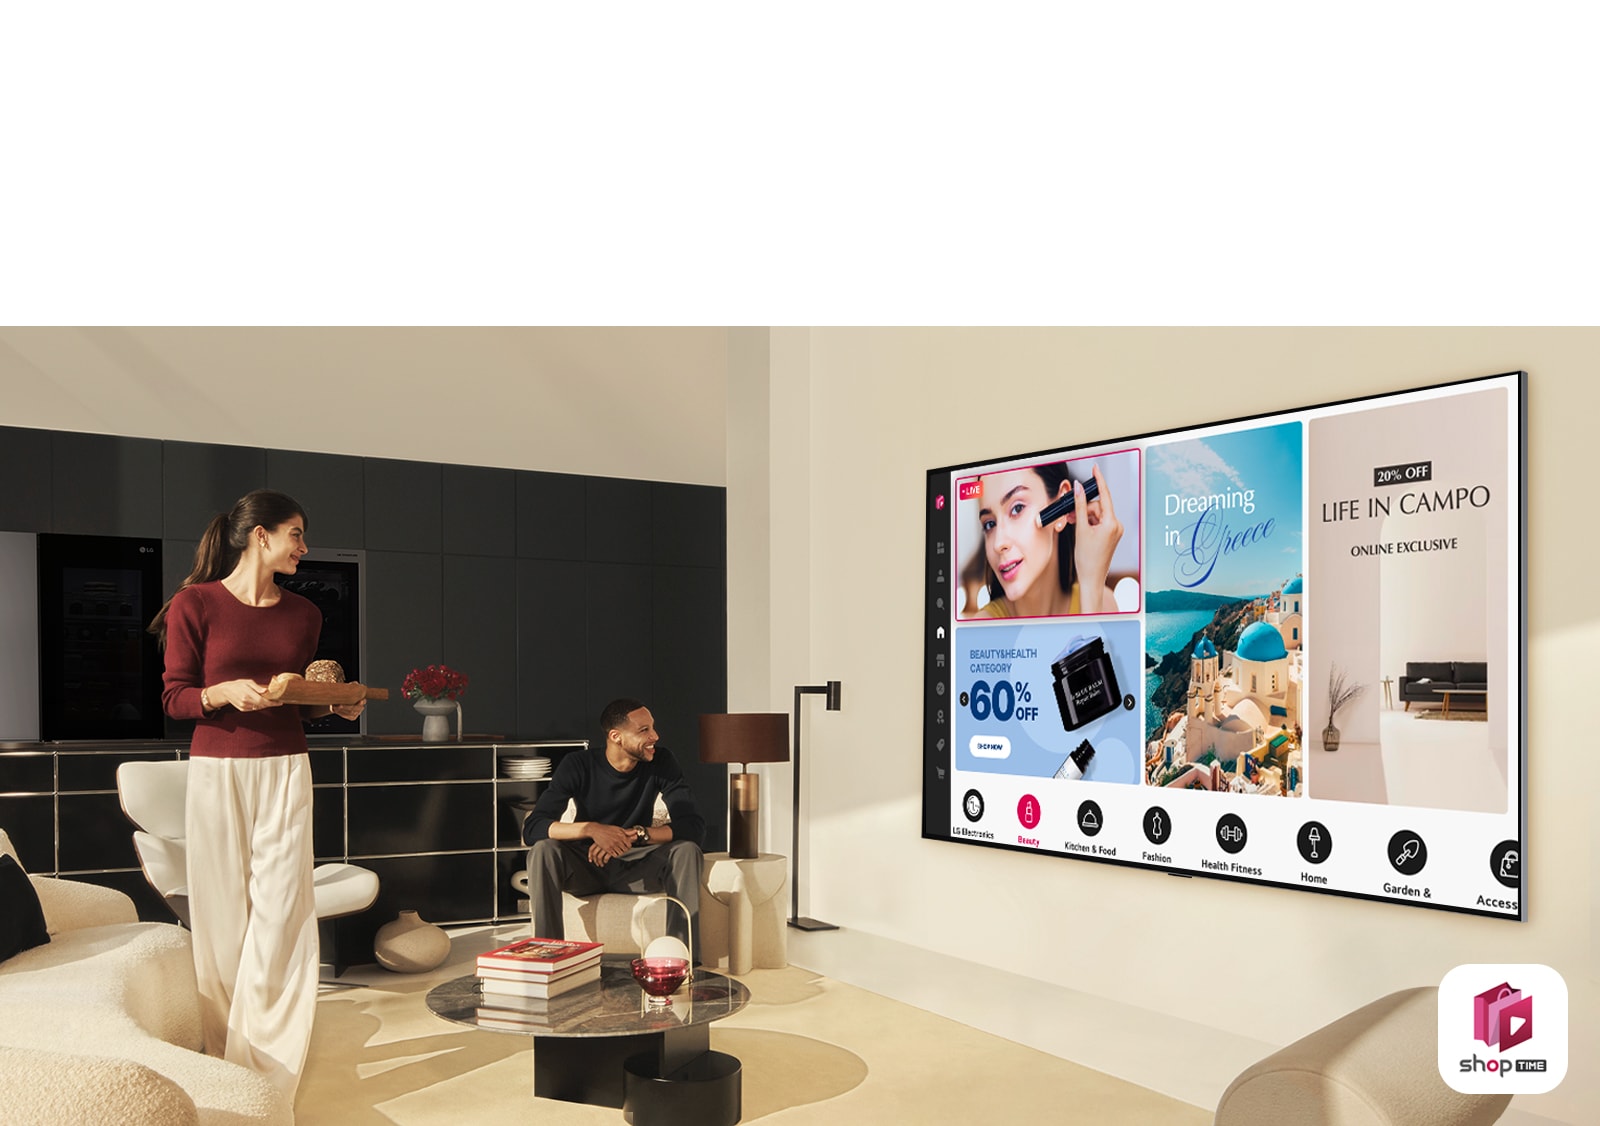 זוג צופה בערוצי הקניות הביתיים ב-LG TV גדולה התלויה על הקיר בחלל מגורים מודרני. 